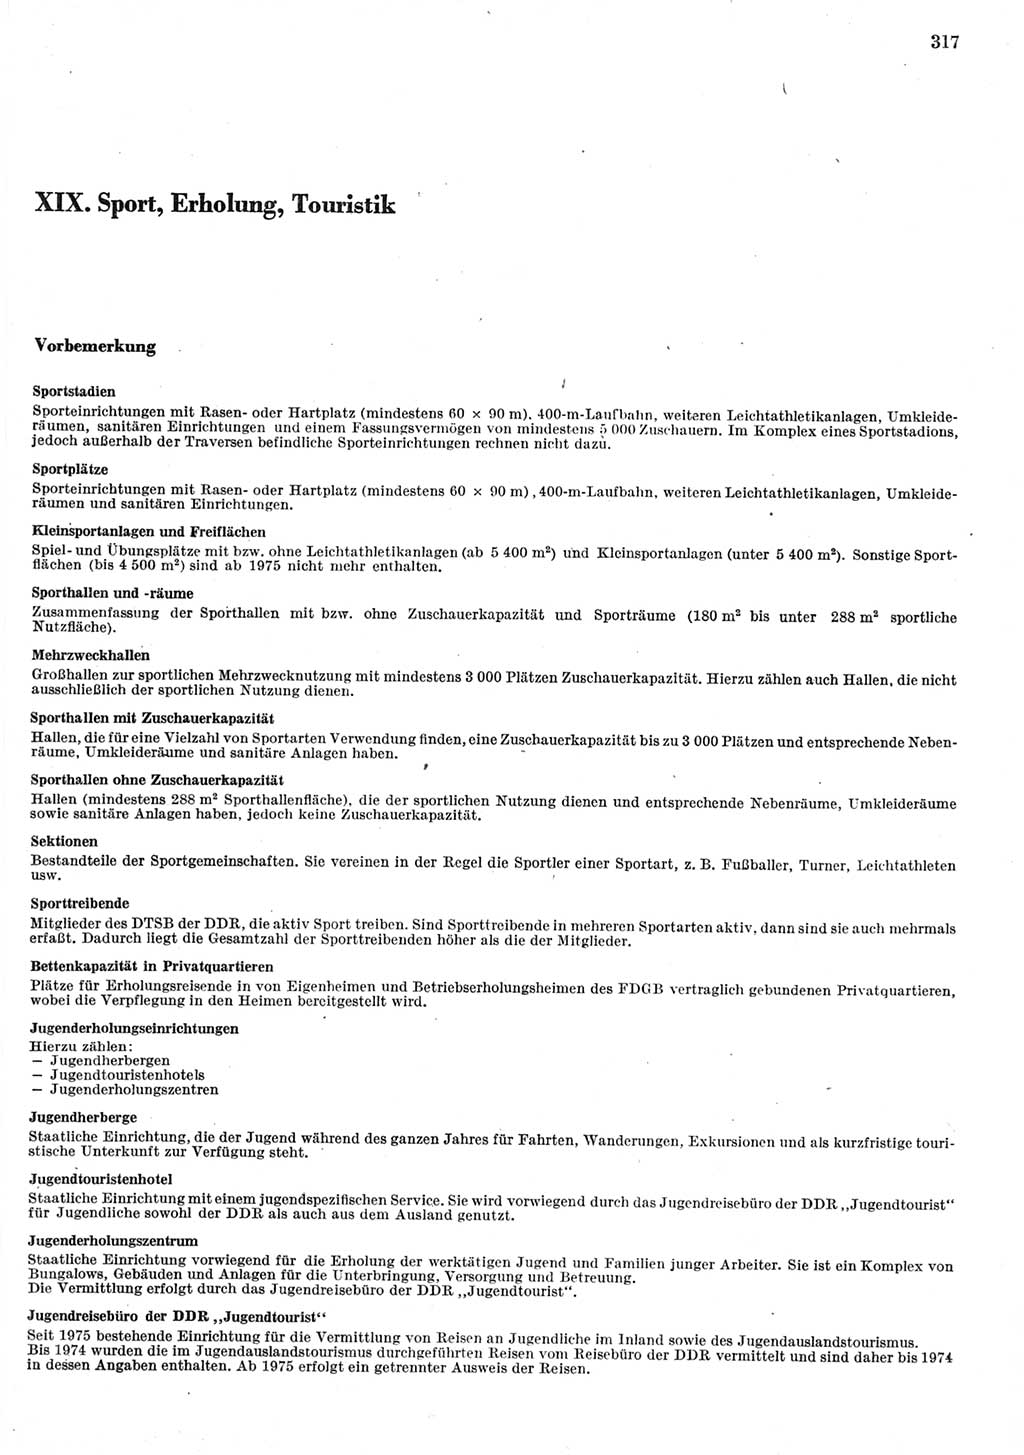 Statistisches Jahrbuch der Deutschen Demokratischen Republik (DDR) 1981, Seite 317 (Stat. Jb. DDR 1981, S. 317)